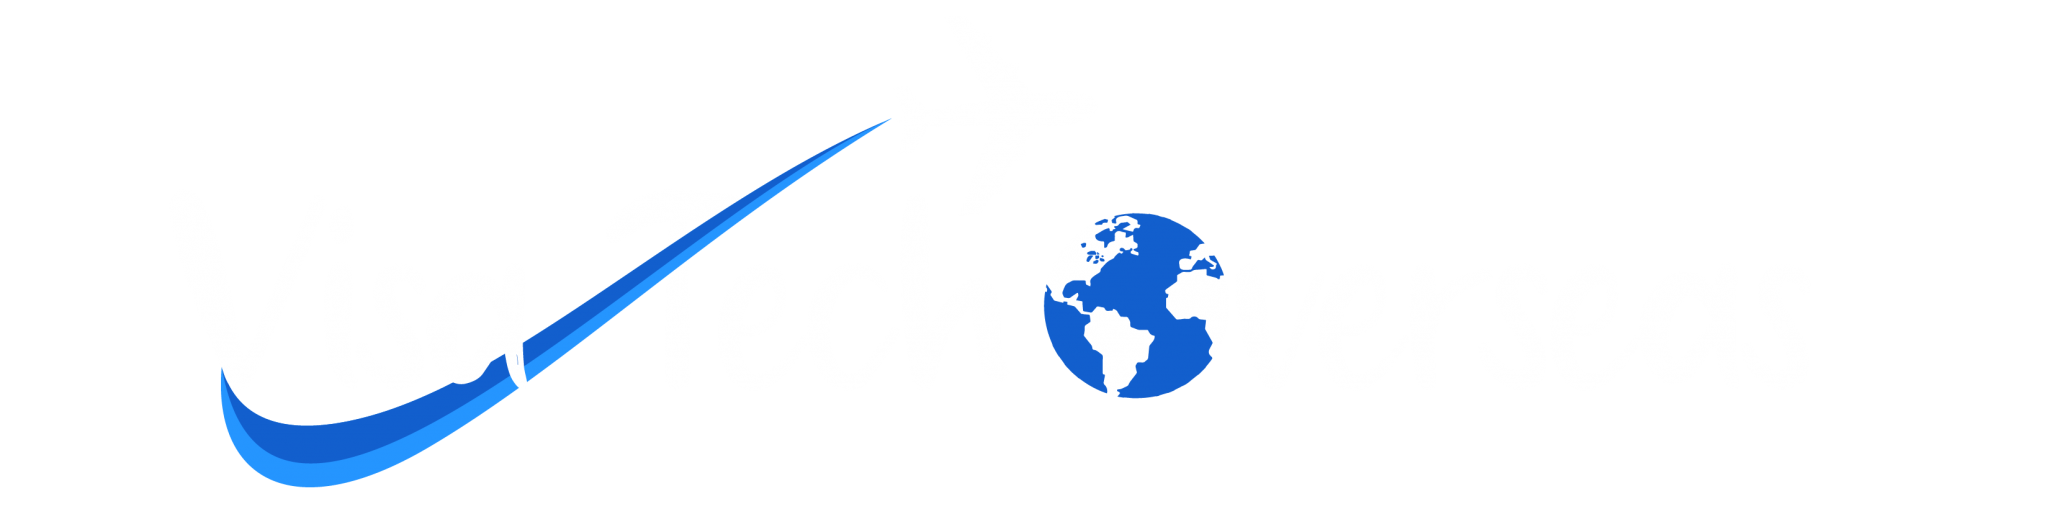 Visa Tech Overseas logo